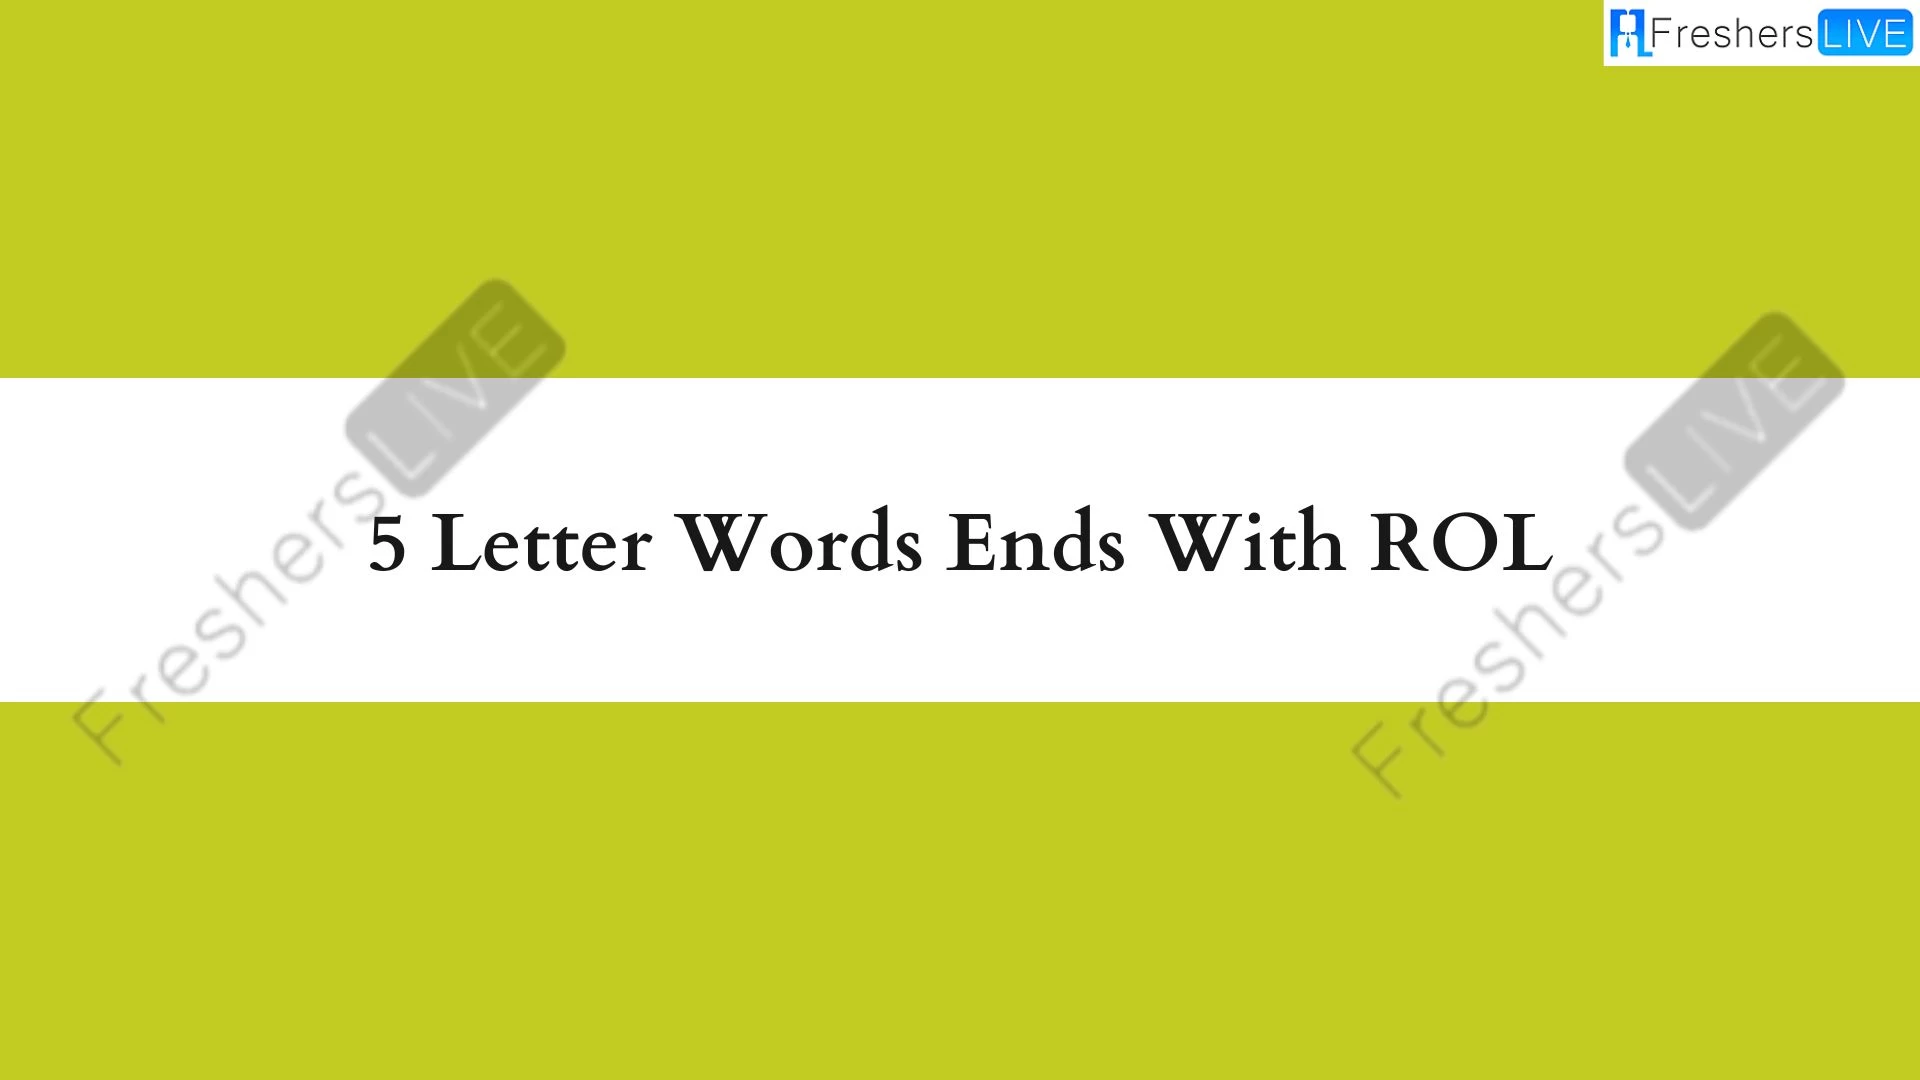 Palabras de 5 letras que terminen en ROL, Lista de palabras de 5 letras que terminen en ROL